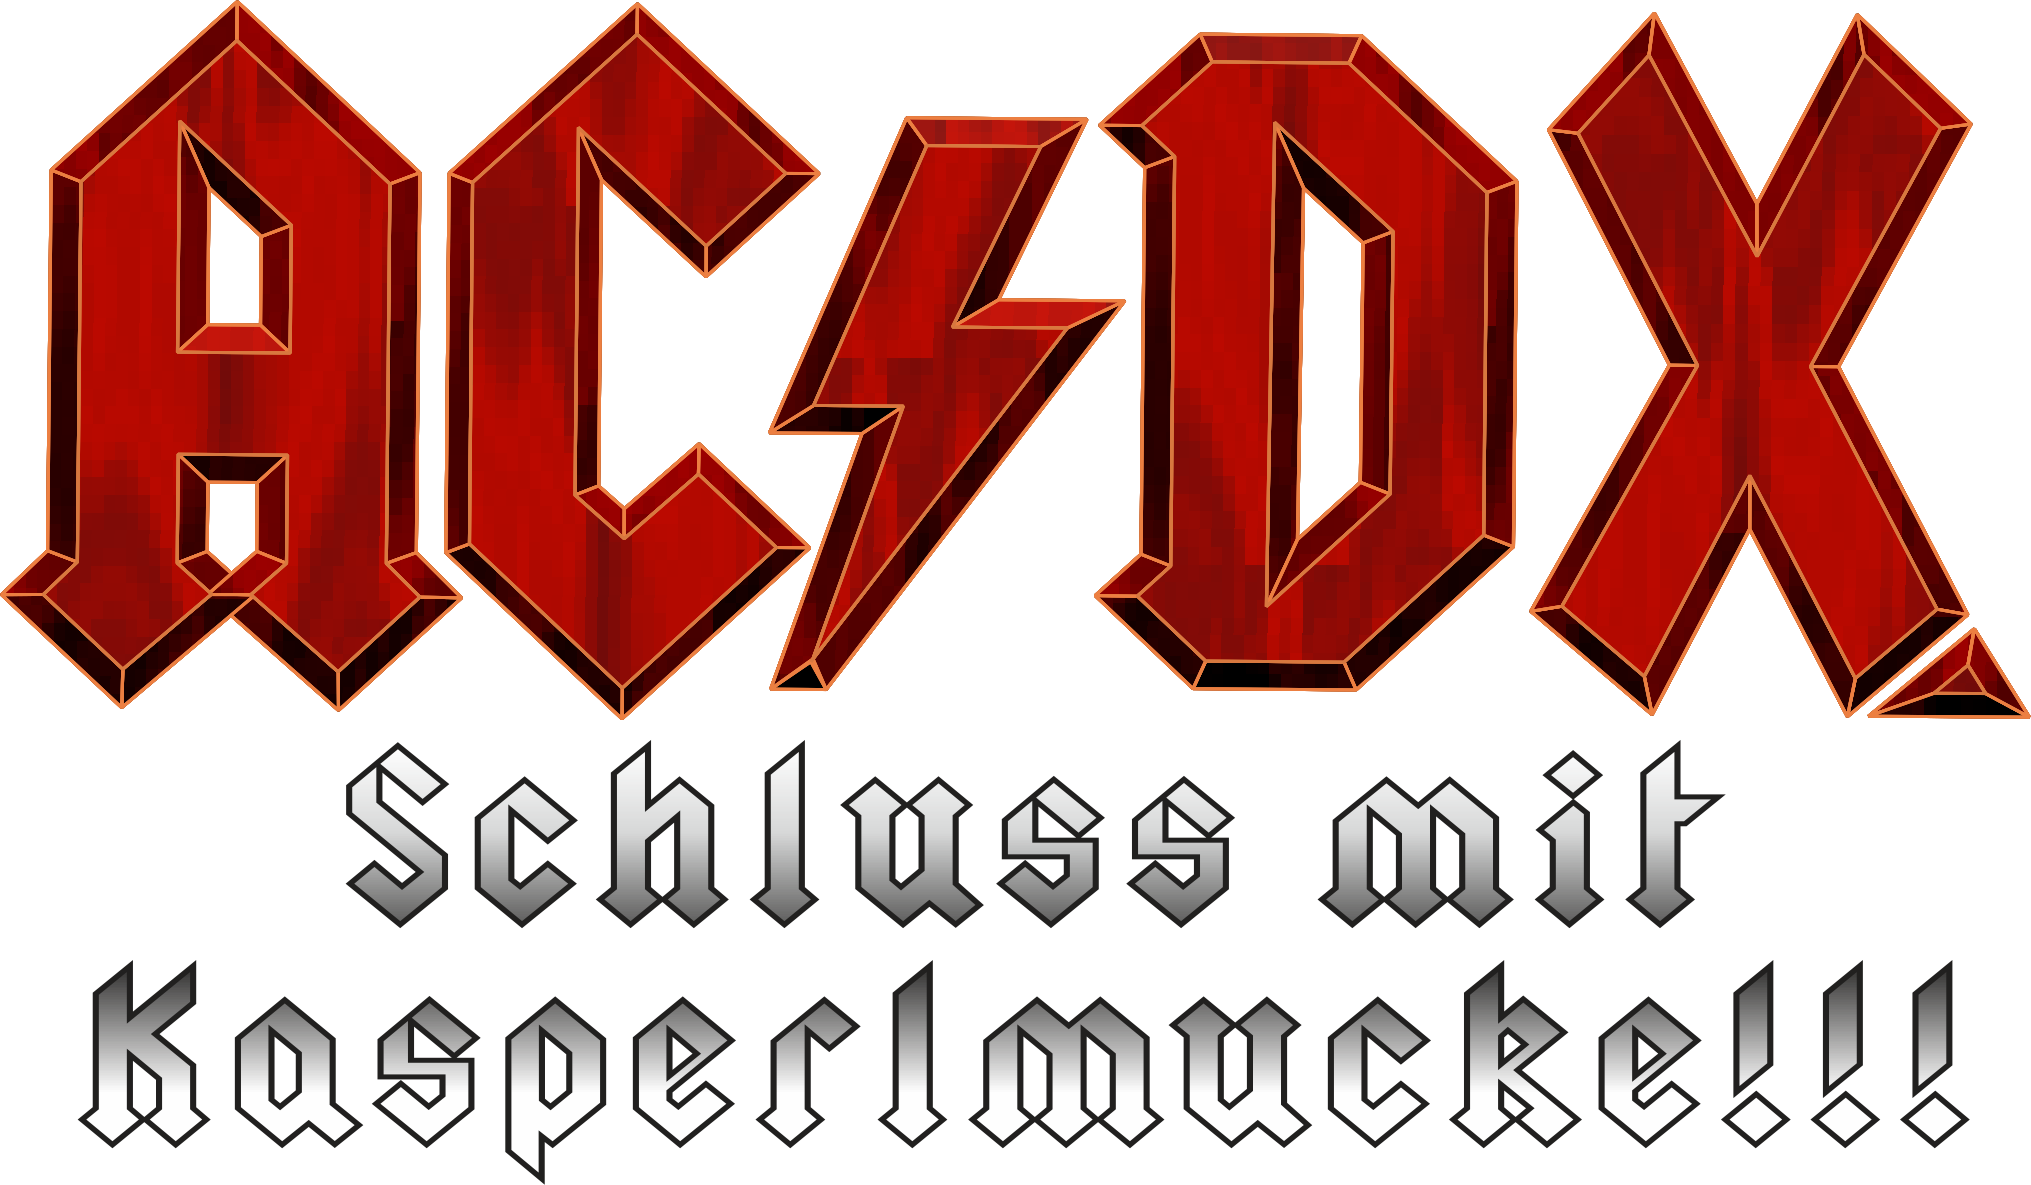 ACDX - Schluss mit Kasperlmucke !!!